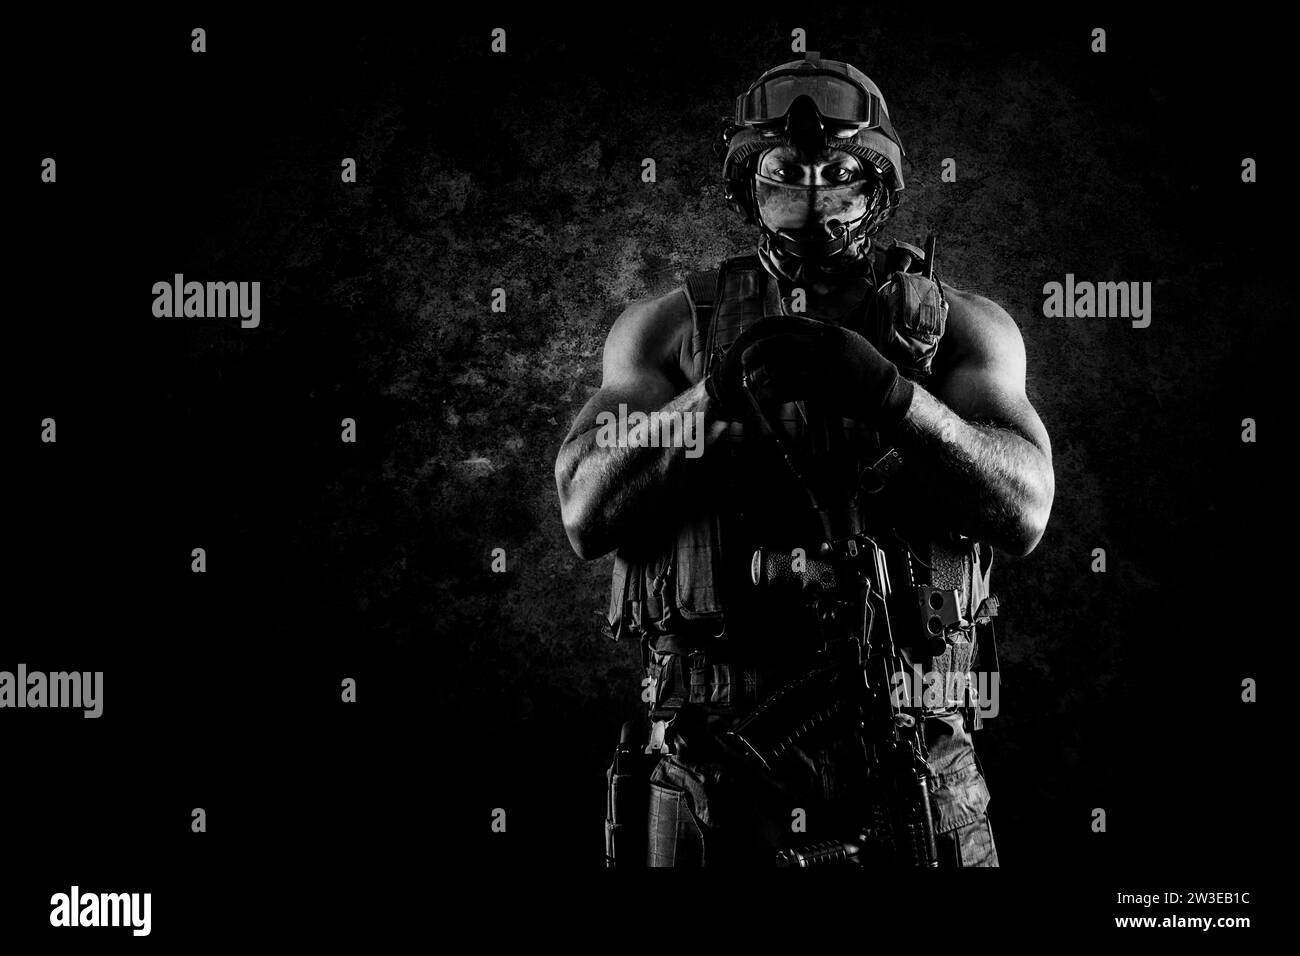 Der Soldat der Spezialeinheit steht mit einer automatischen Waffe im Vorteil. Gemischte Medien Stockfoto